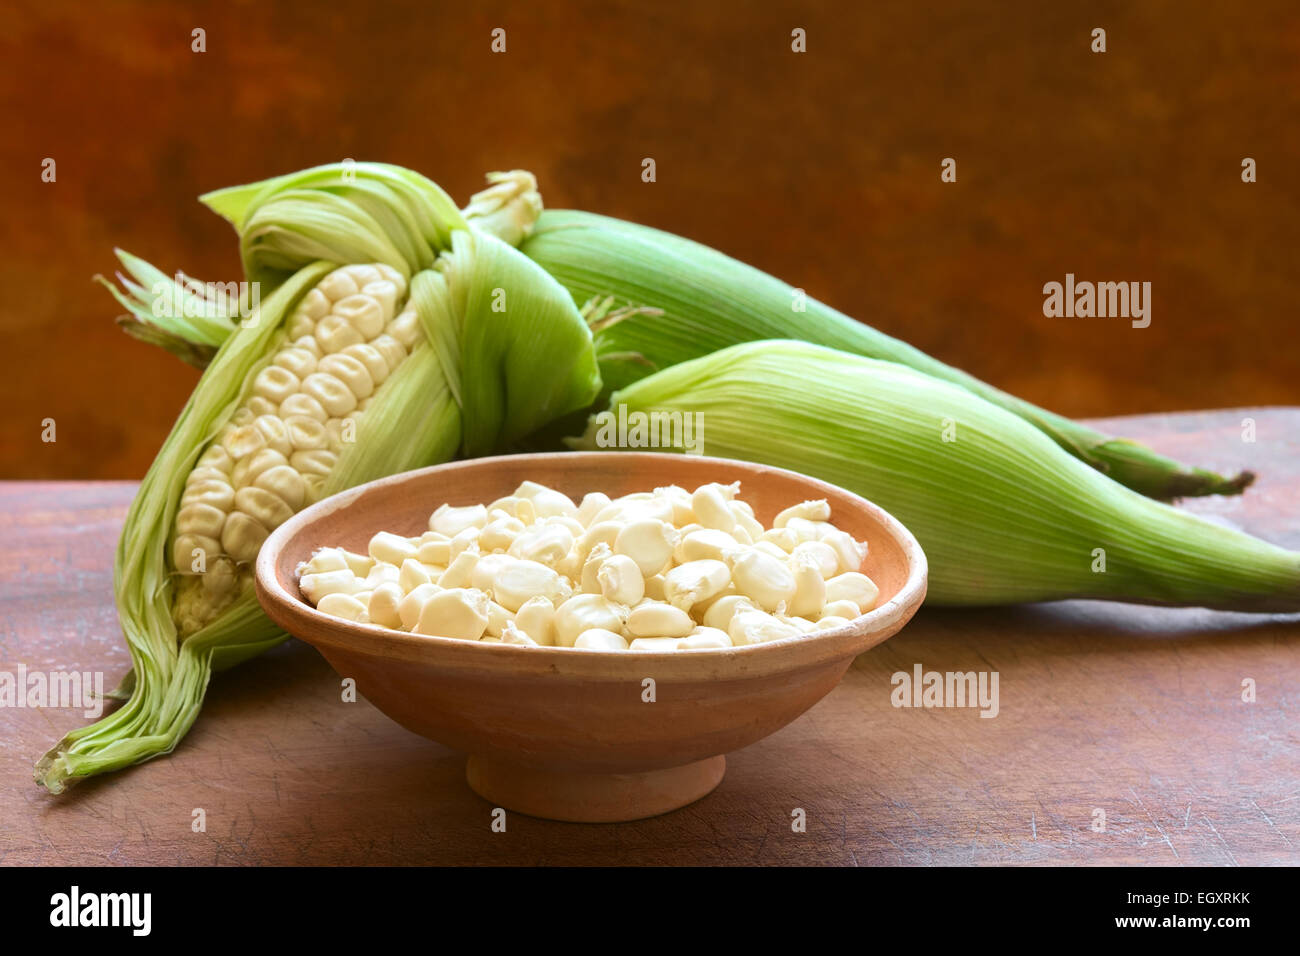 Los granos de maíz blanco llamado choclo (Español), en inglés o en Cuzco maíz peruano, que habitualmente se encuentra en Perú y Bolivia Foto de stock